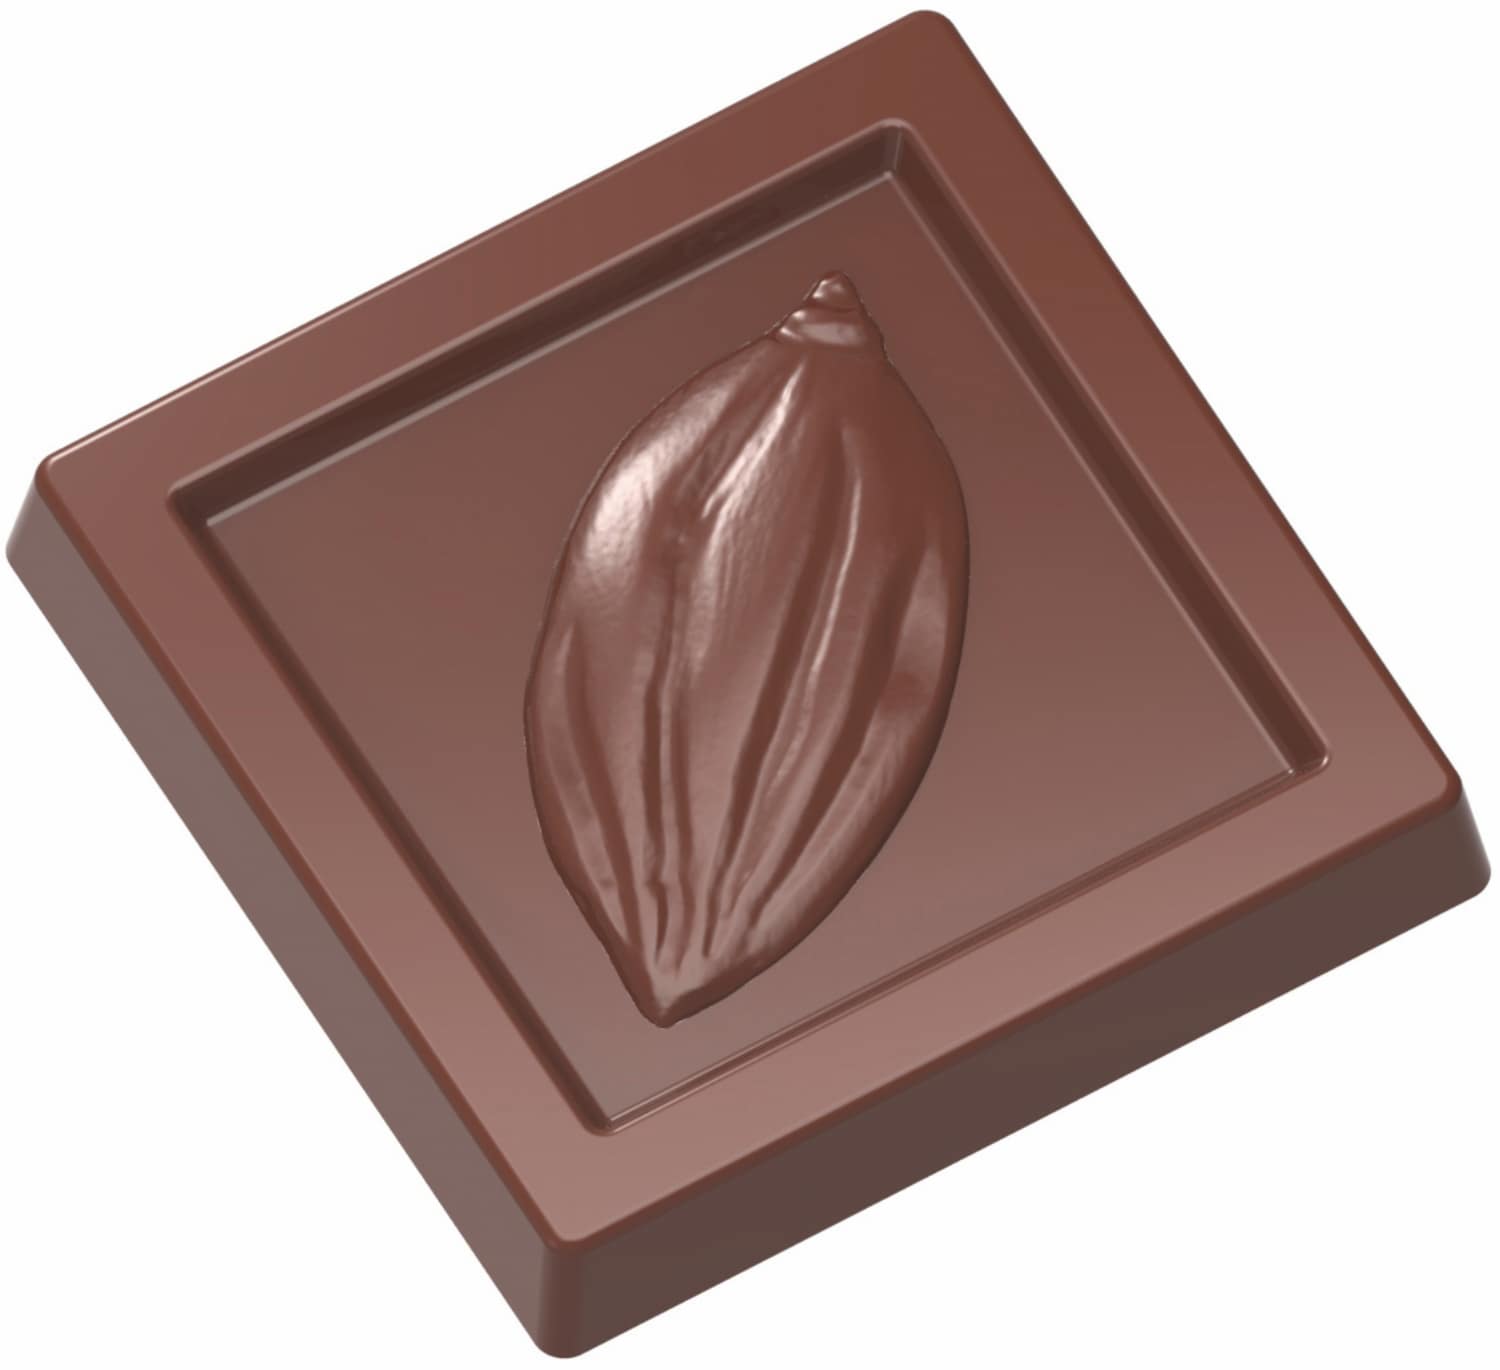 Schokoladenform "Kakaobohne" 421901 421901